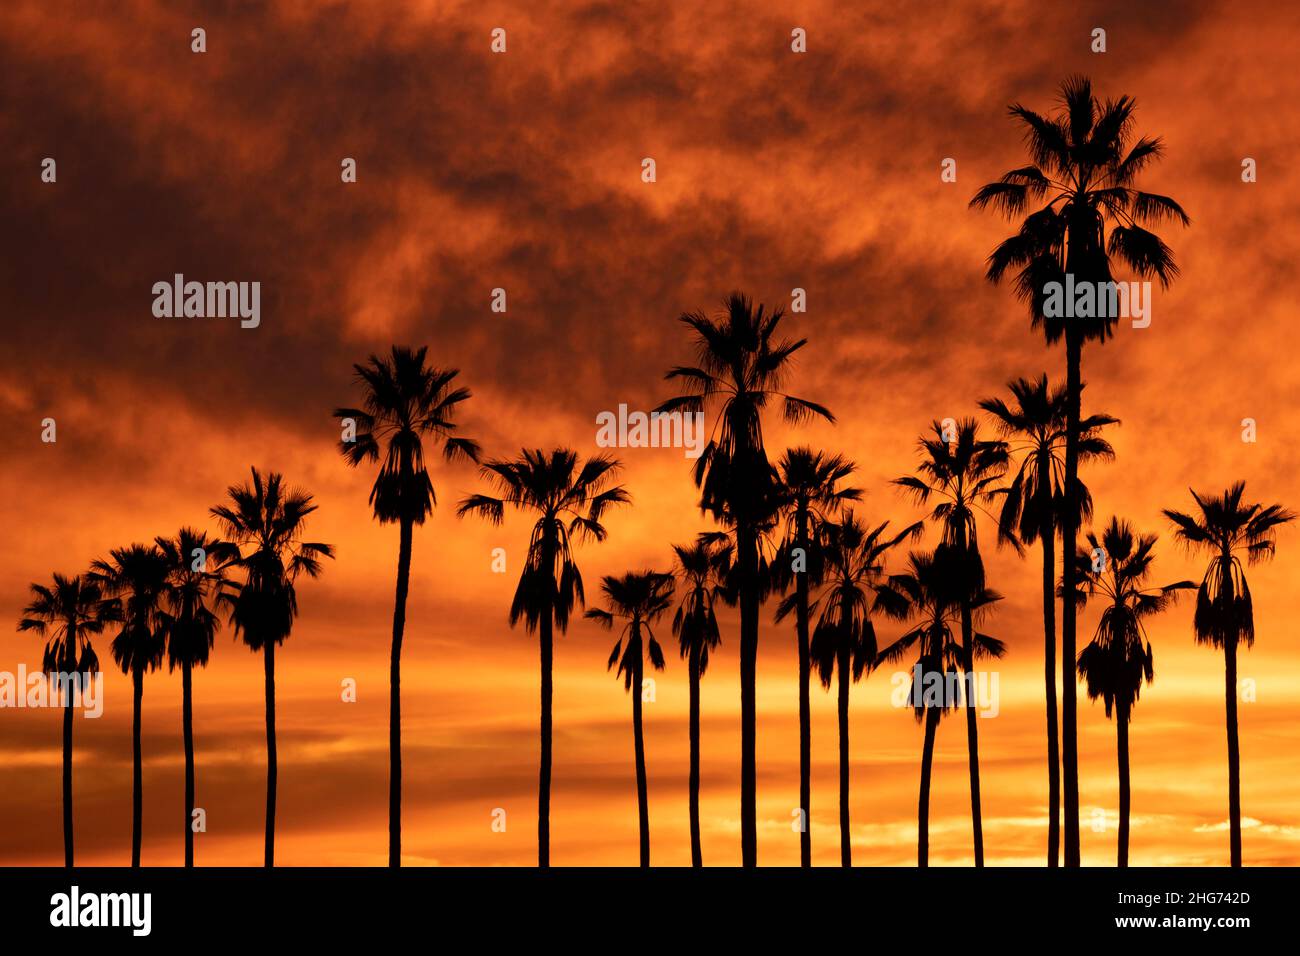 Silueta de una línea de altas palmeras contra una puesta de sol dorada y naranja en Los Ángeles, California Foto de stock